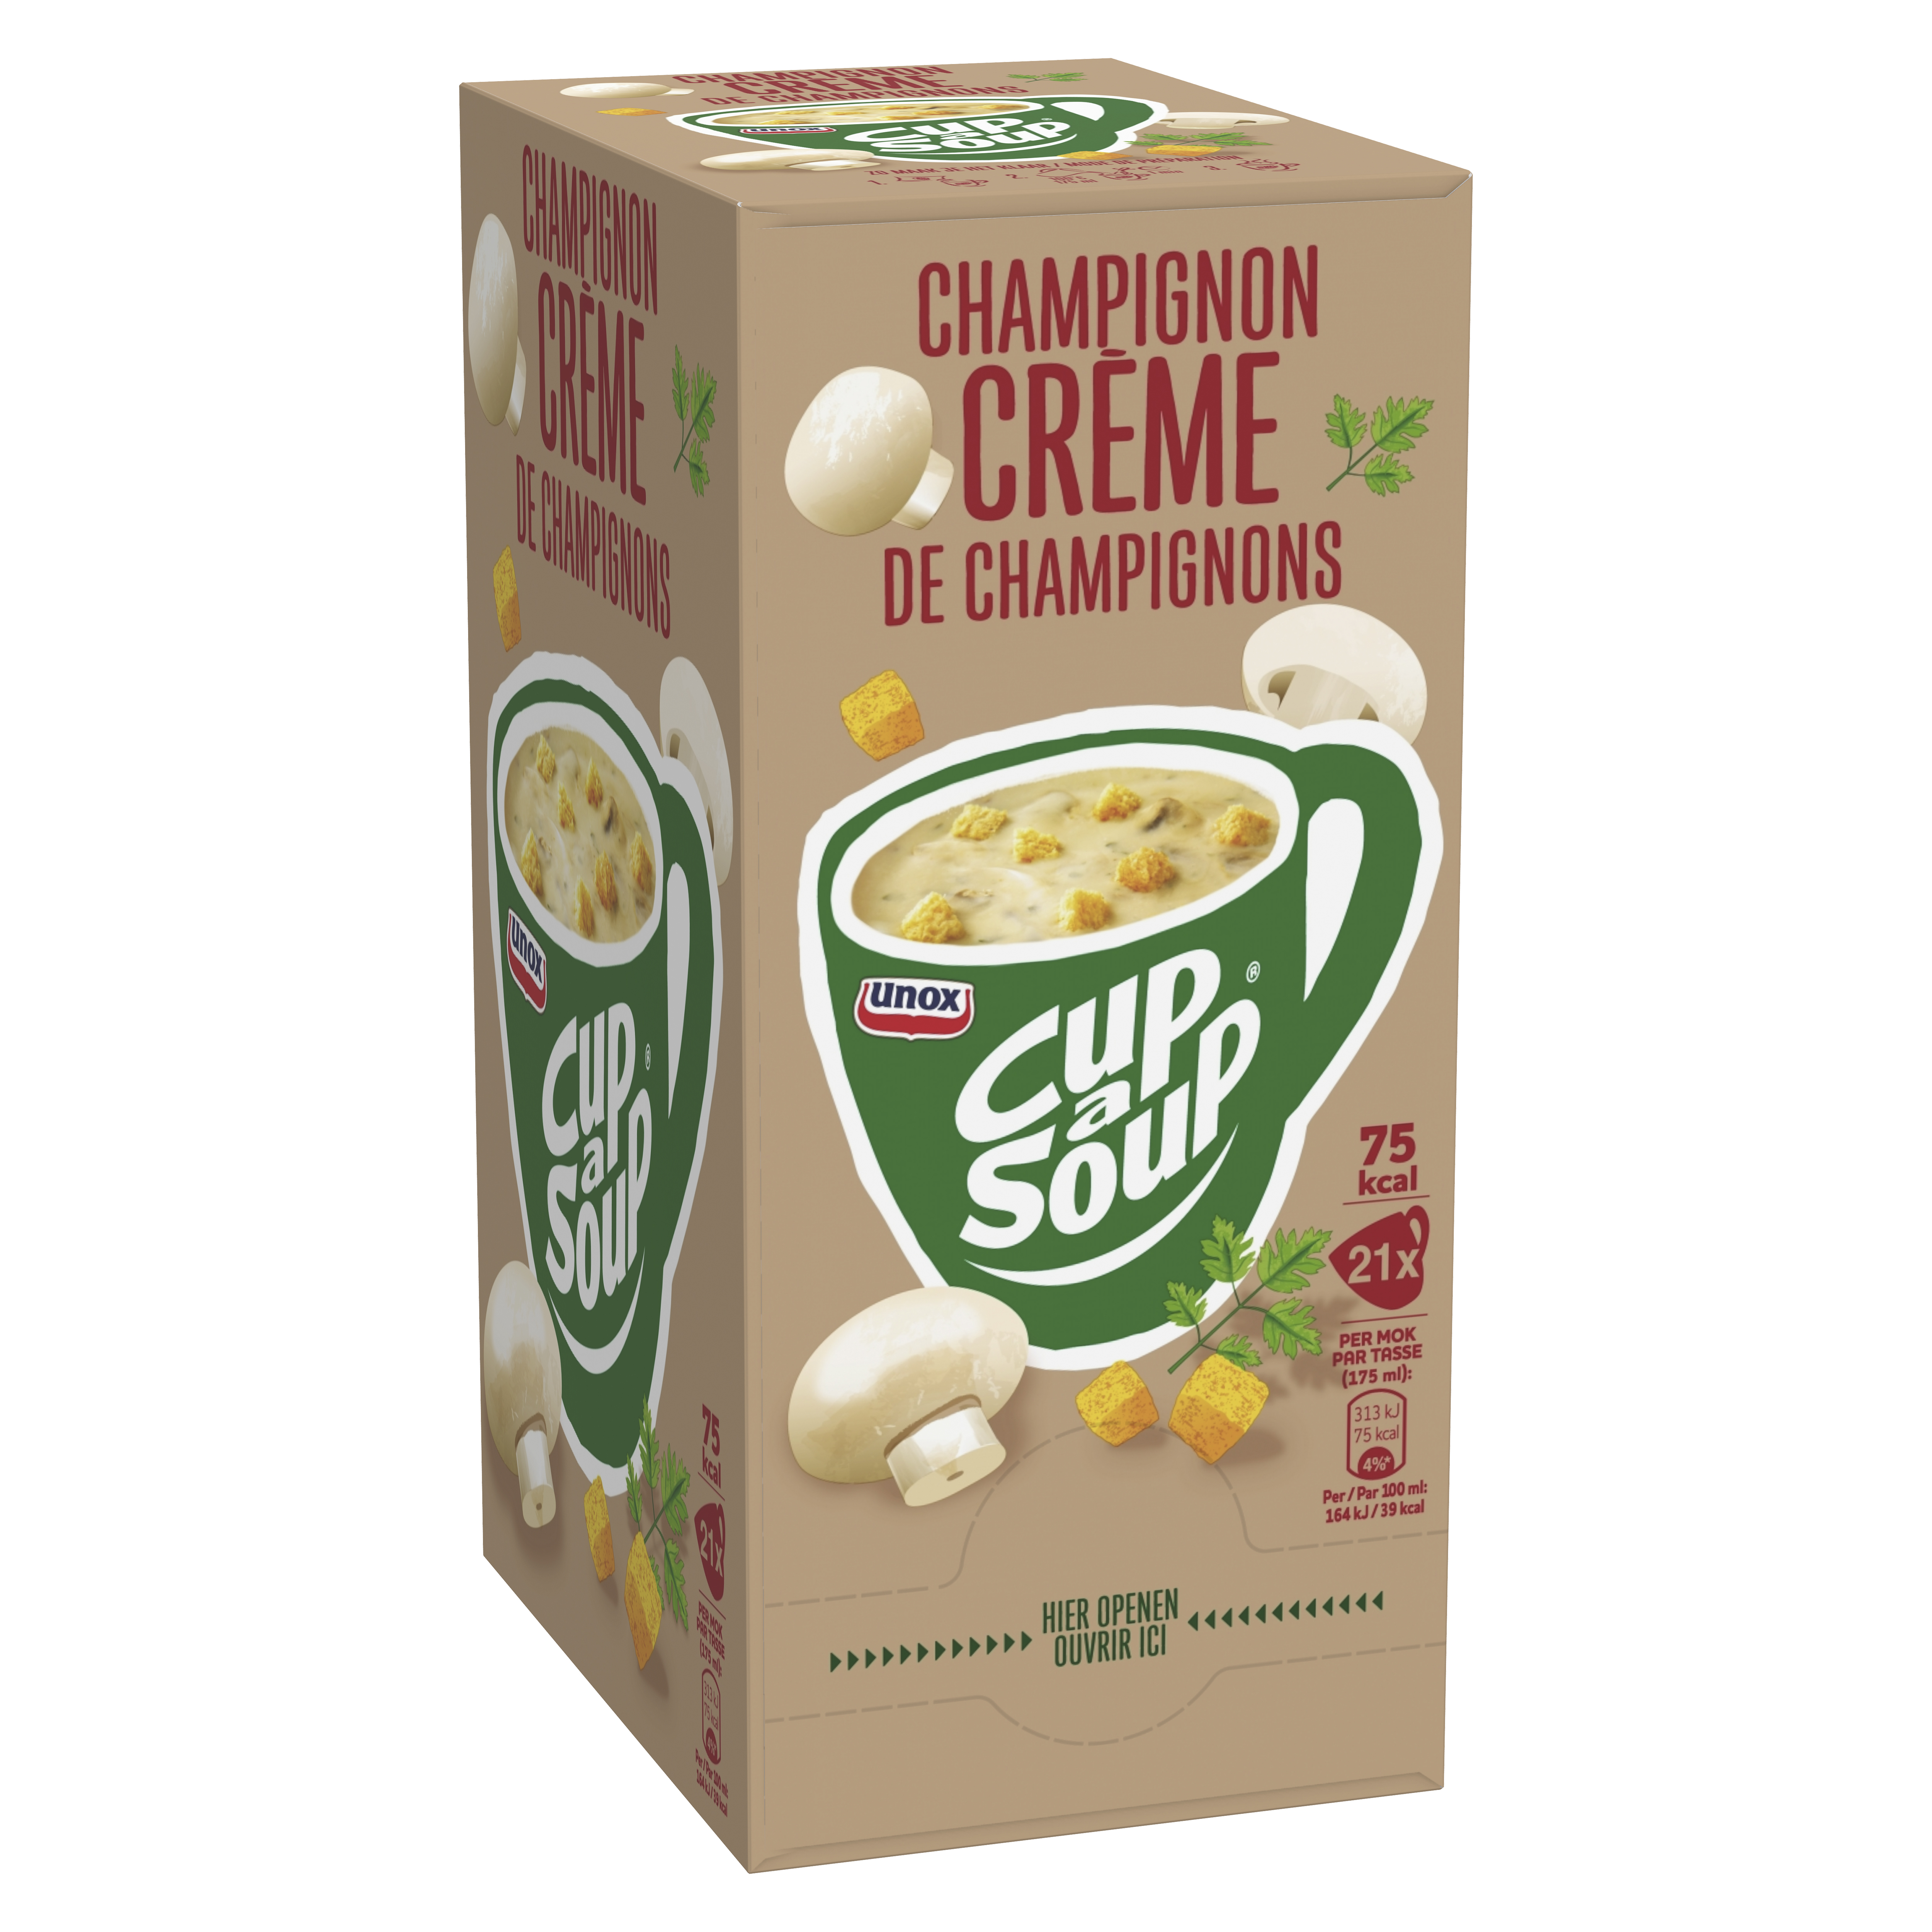 Cup-a-Soup Champignon Crème 175 ml